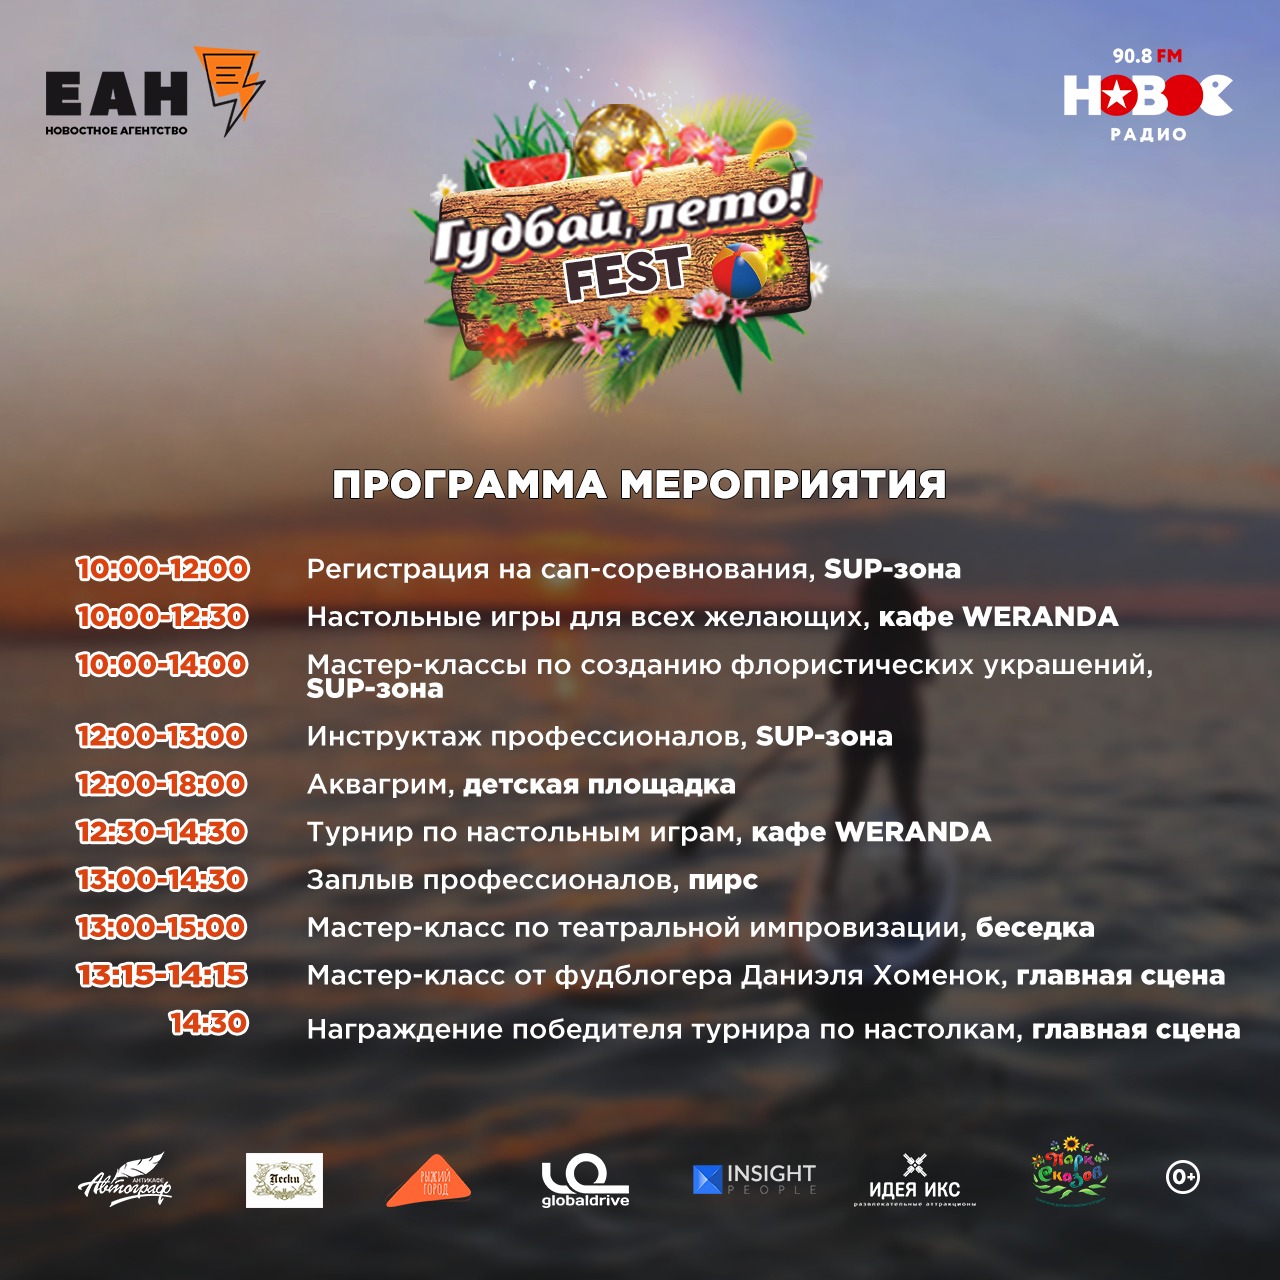 Программа фестиваля «Гудбай, лето! FEST» 